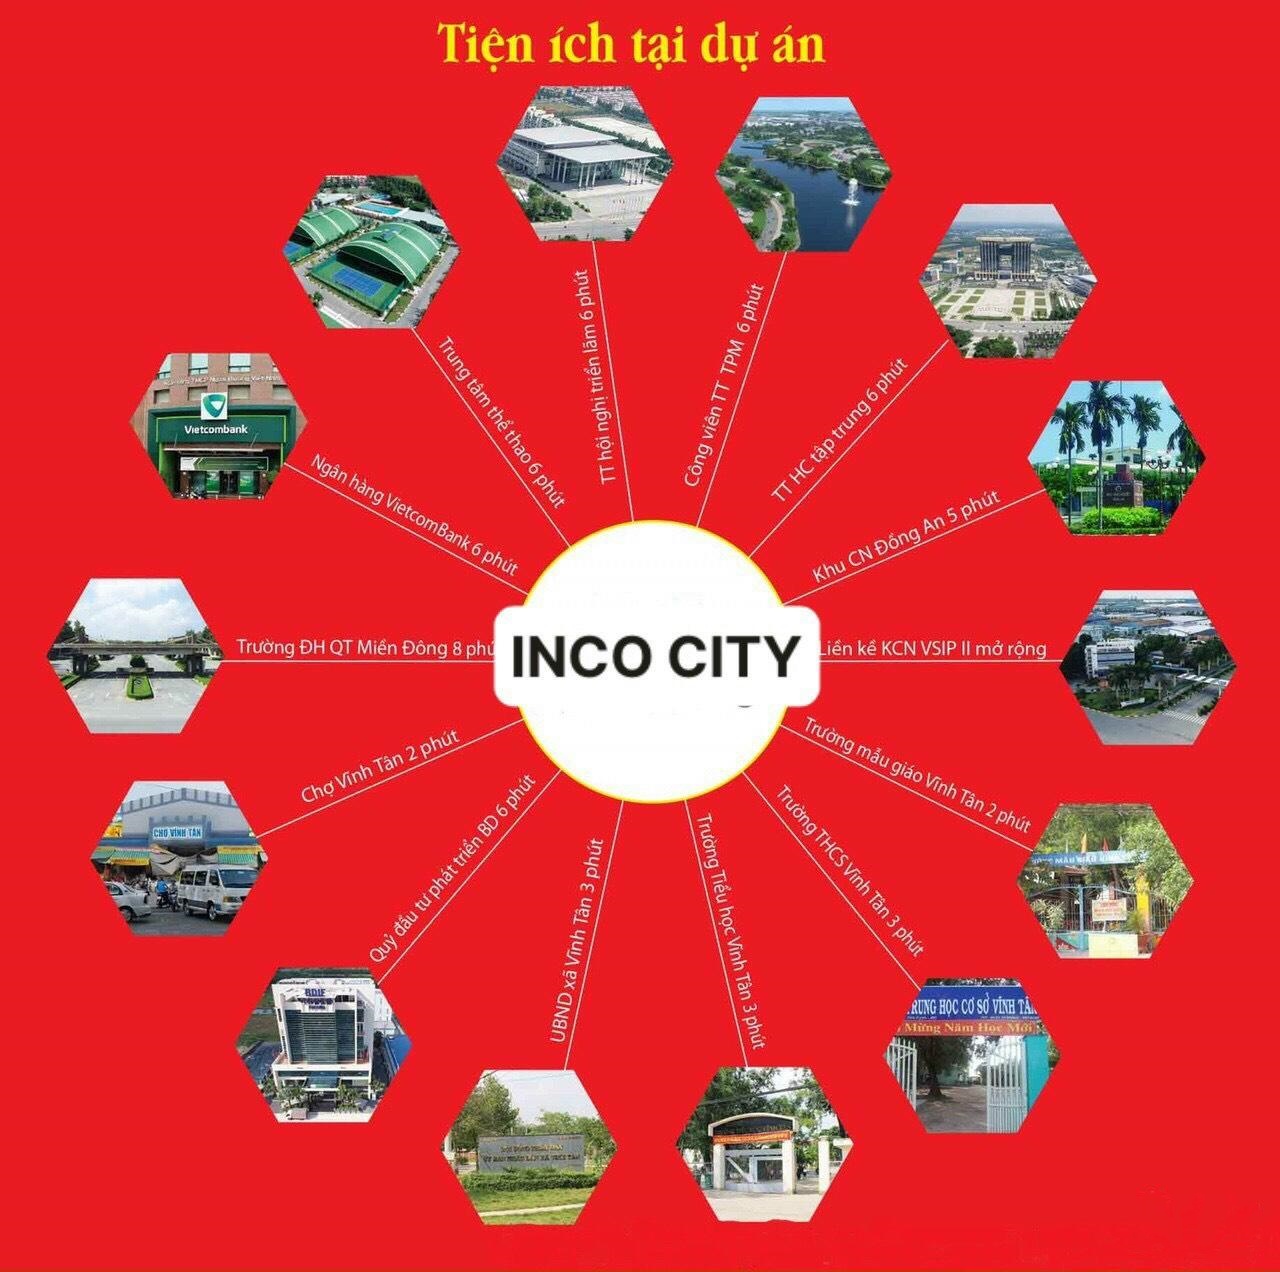 INCO City Bình Dương